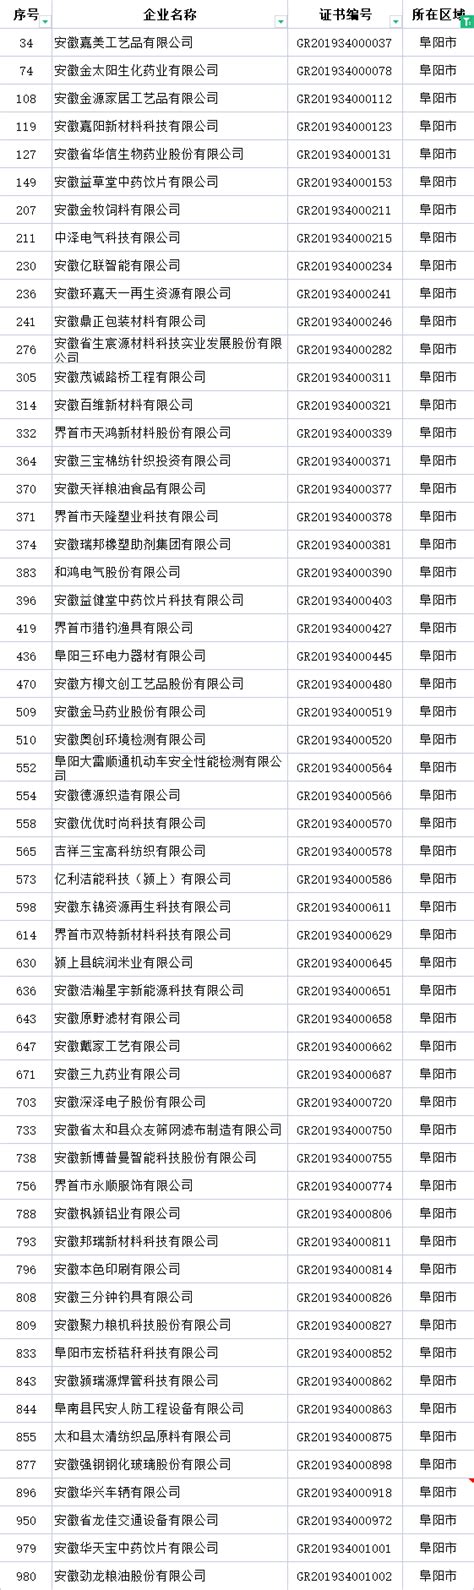 阜阳市高新技术企业名单数量和各区奖补资金汇总